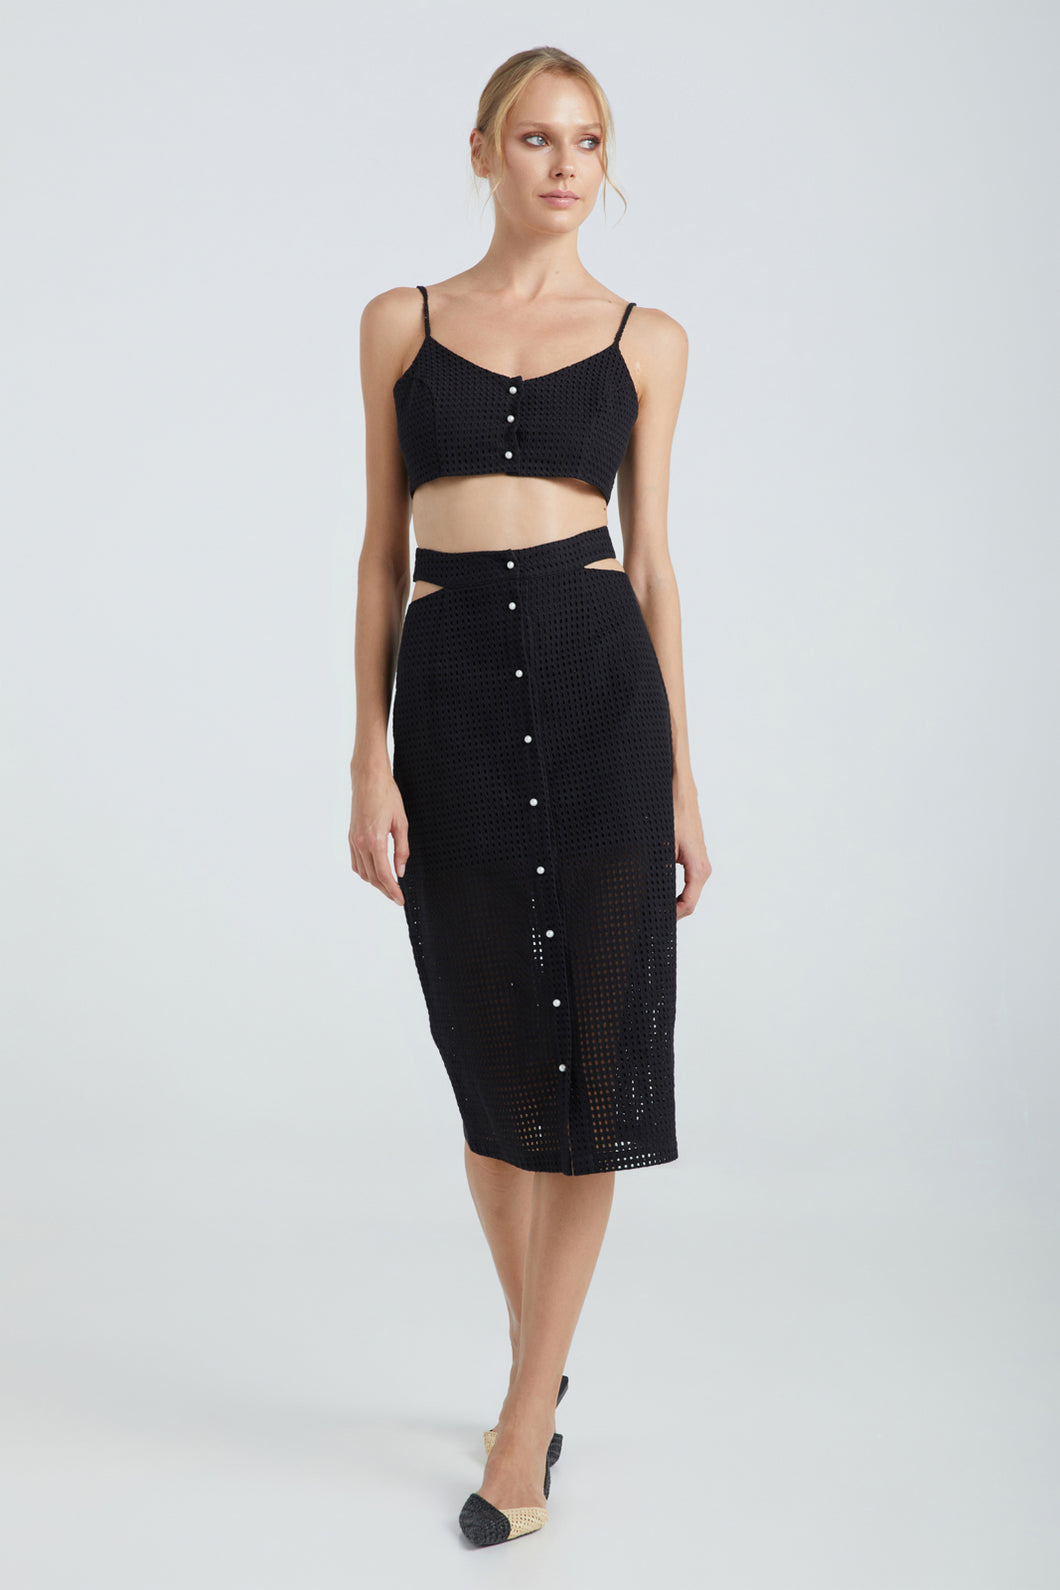 Celine Skirt (Black)